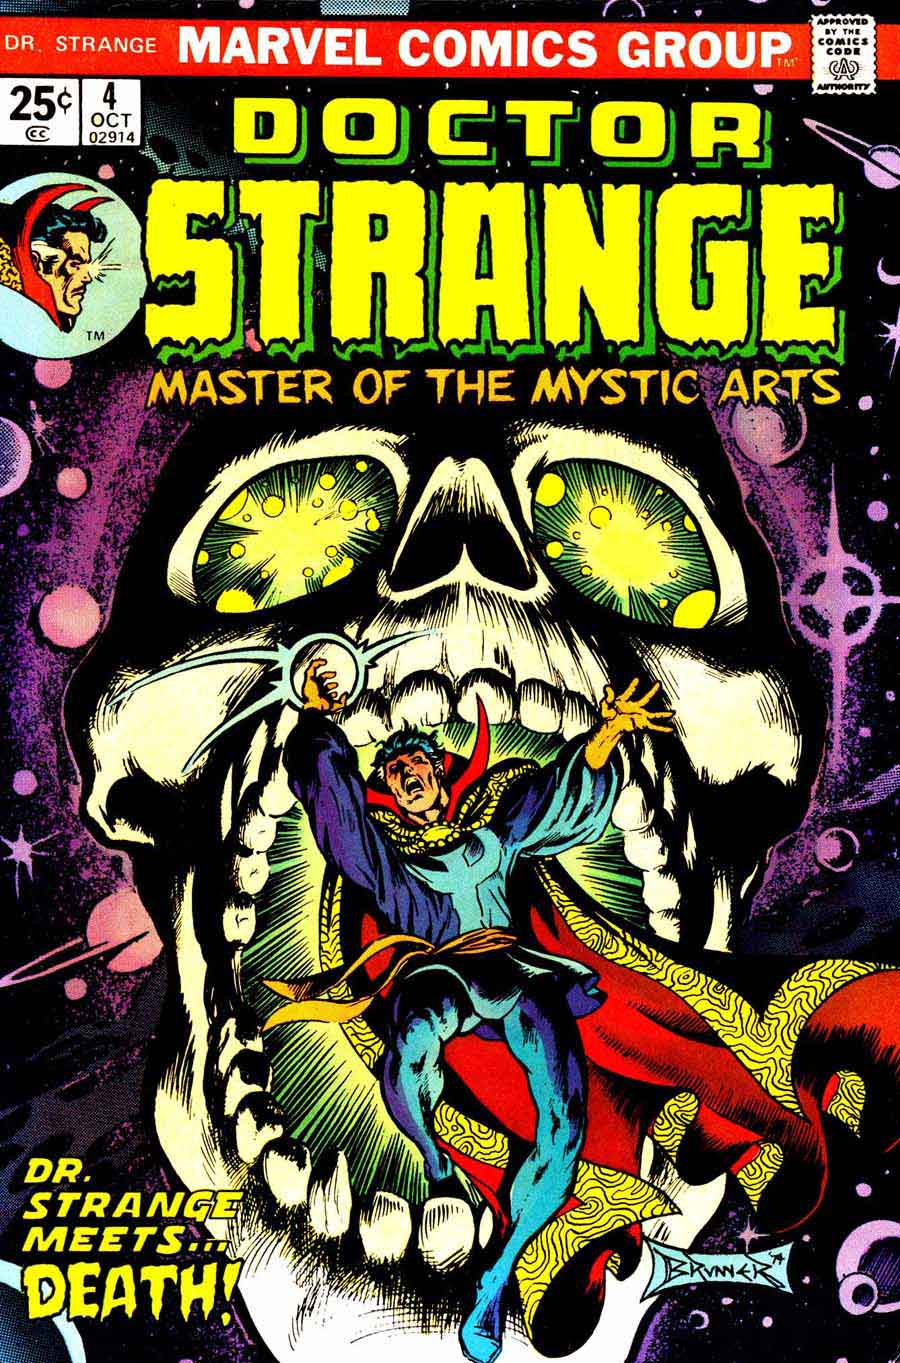 Frank Brunner  bronze age 1970s marvel comic book cover art - Doctor Strange v2 #4